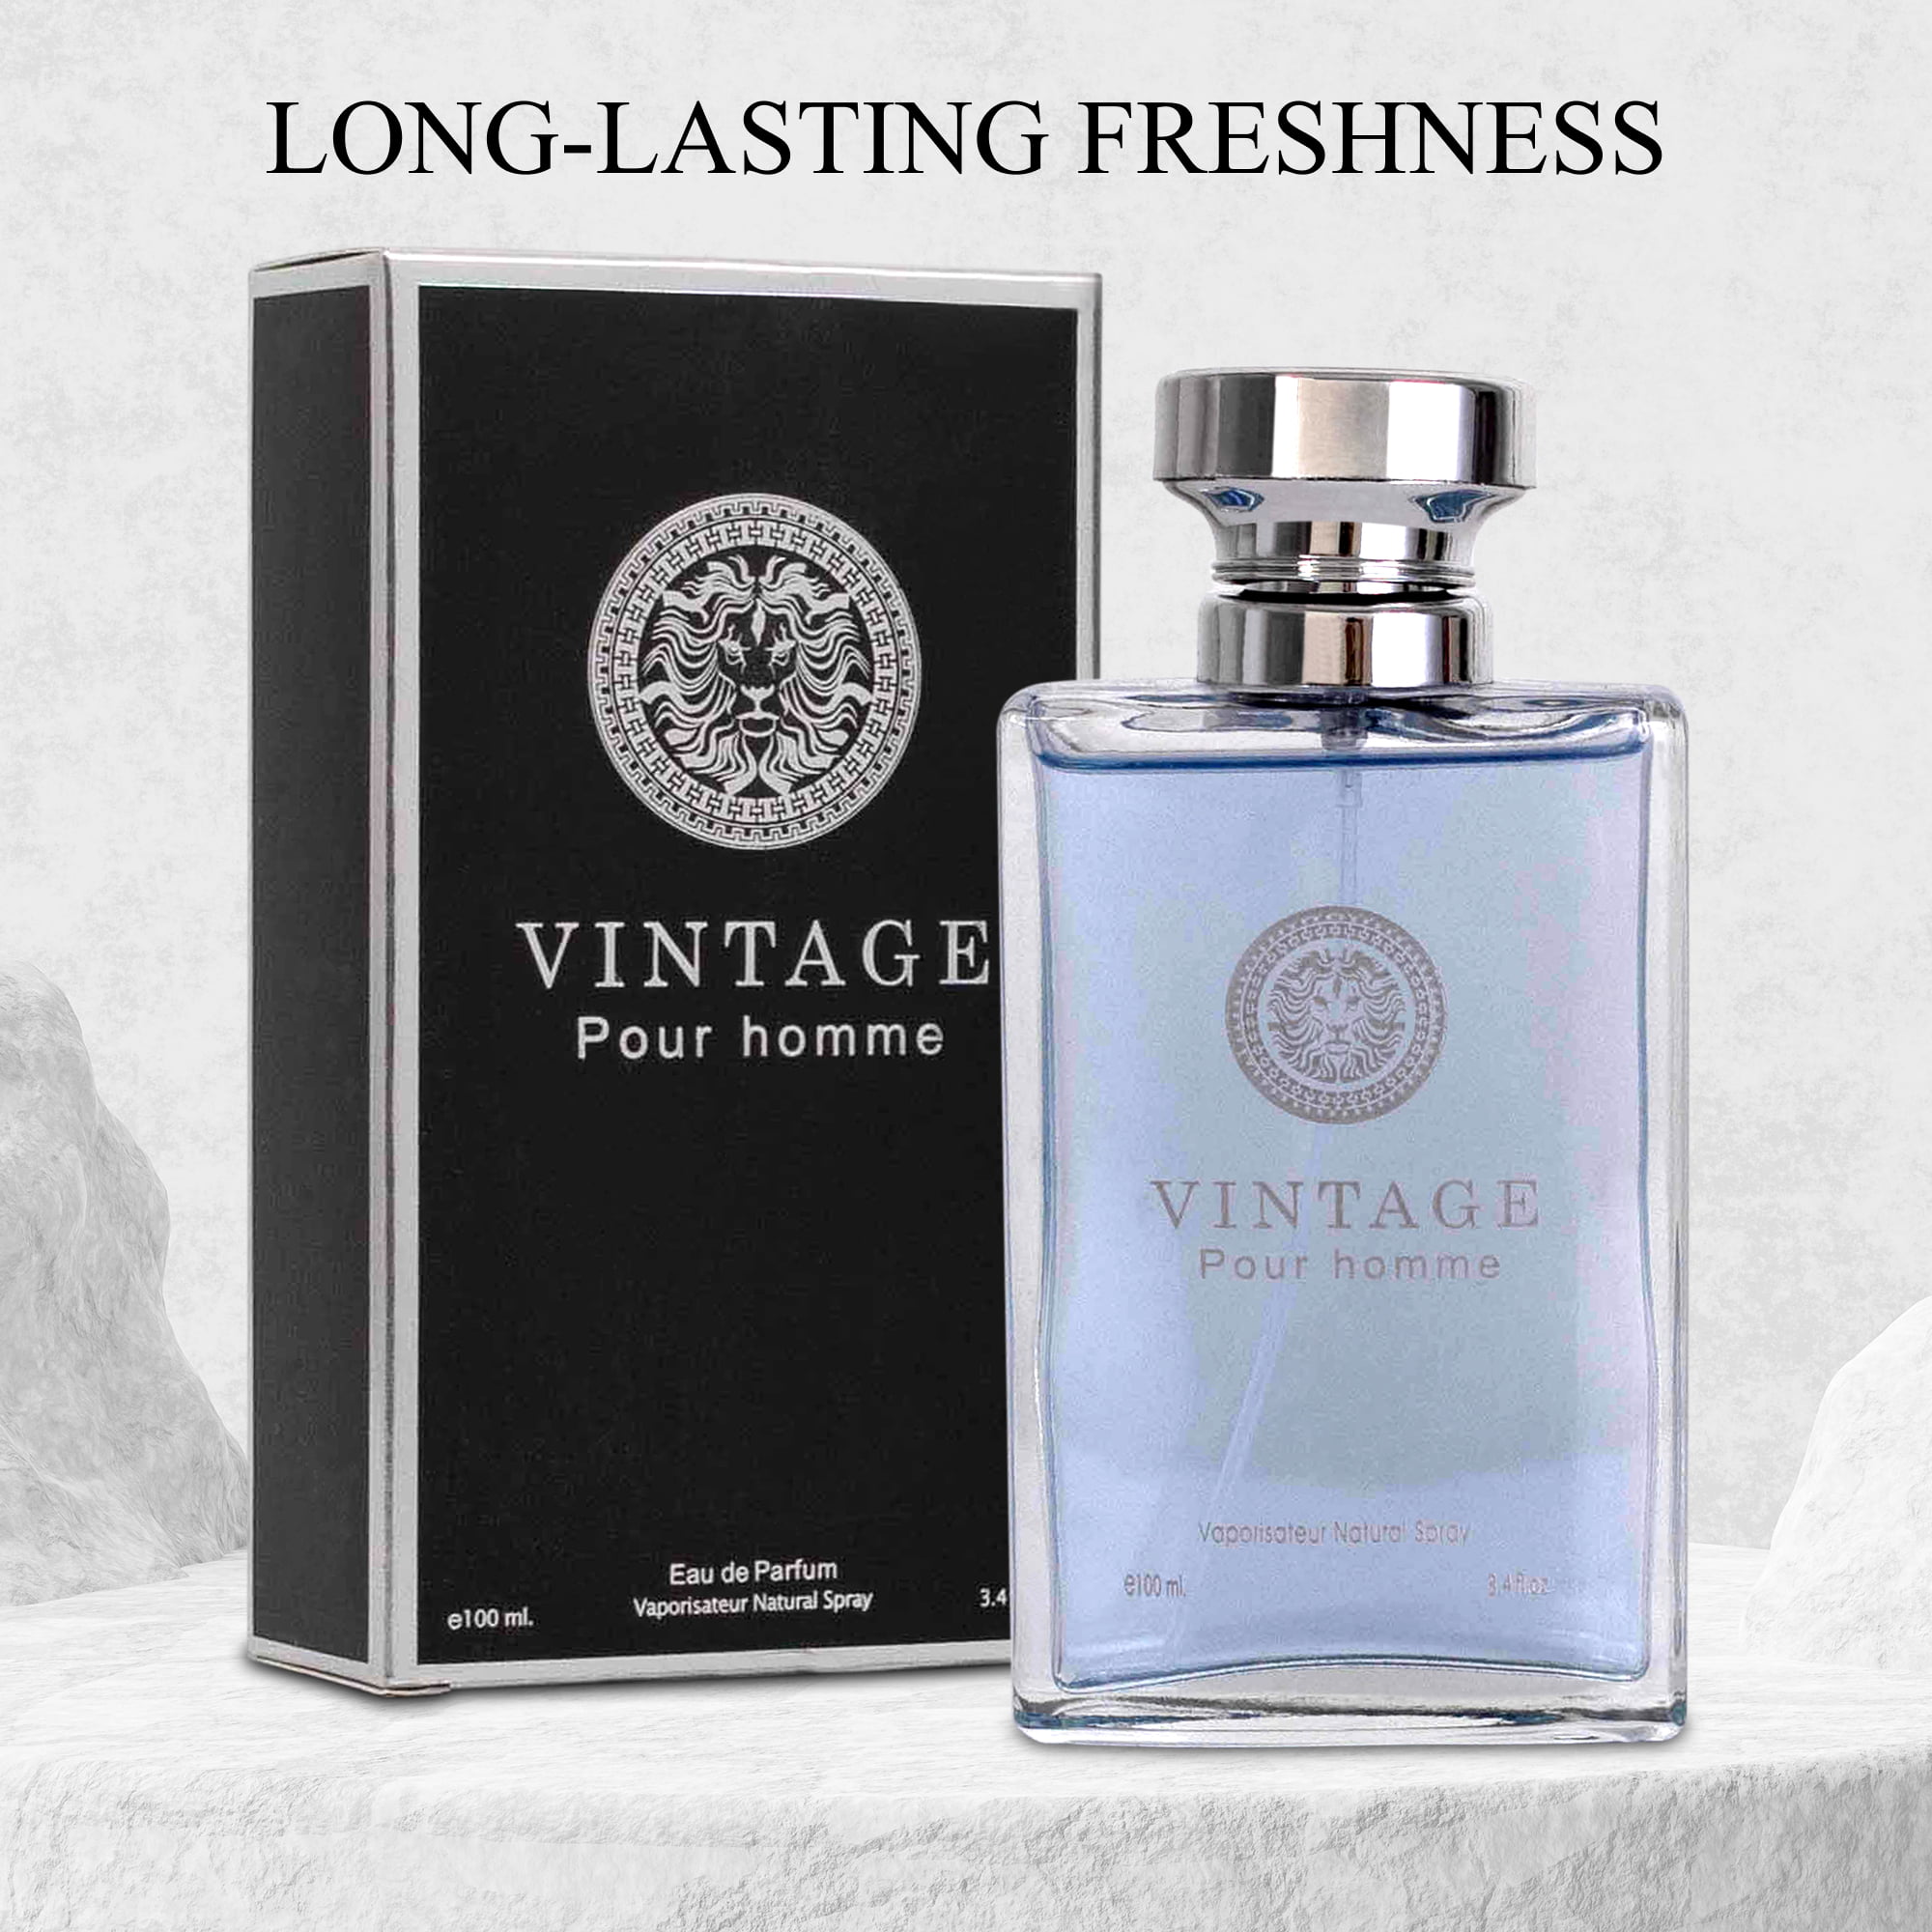 NovoGlow Vintage Pour Homme Eau De Parfum 3.4 fl oz. Fragrance